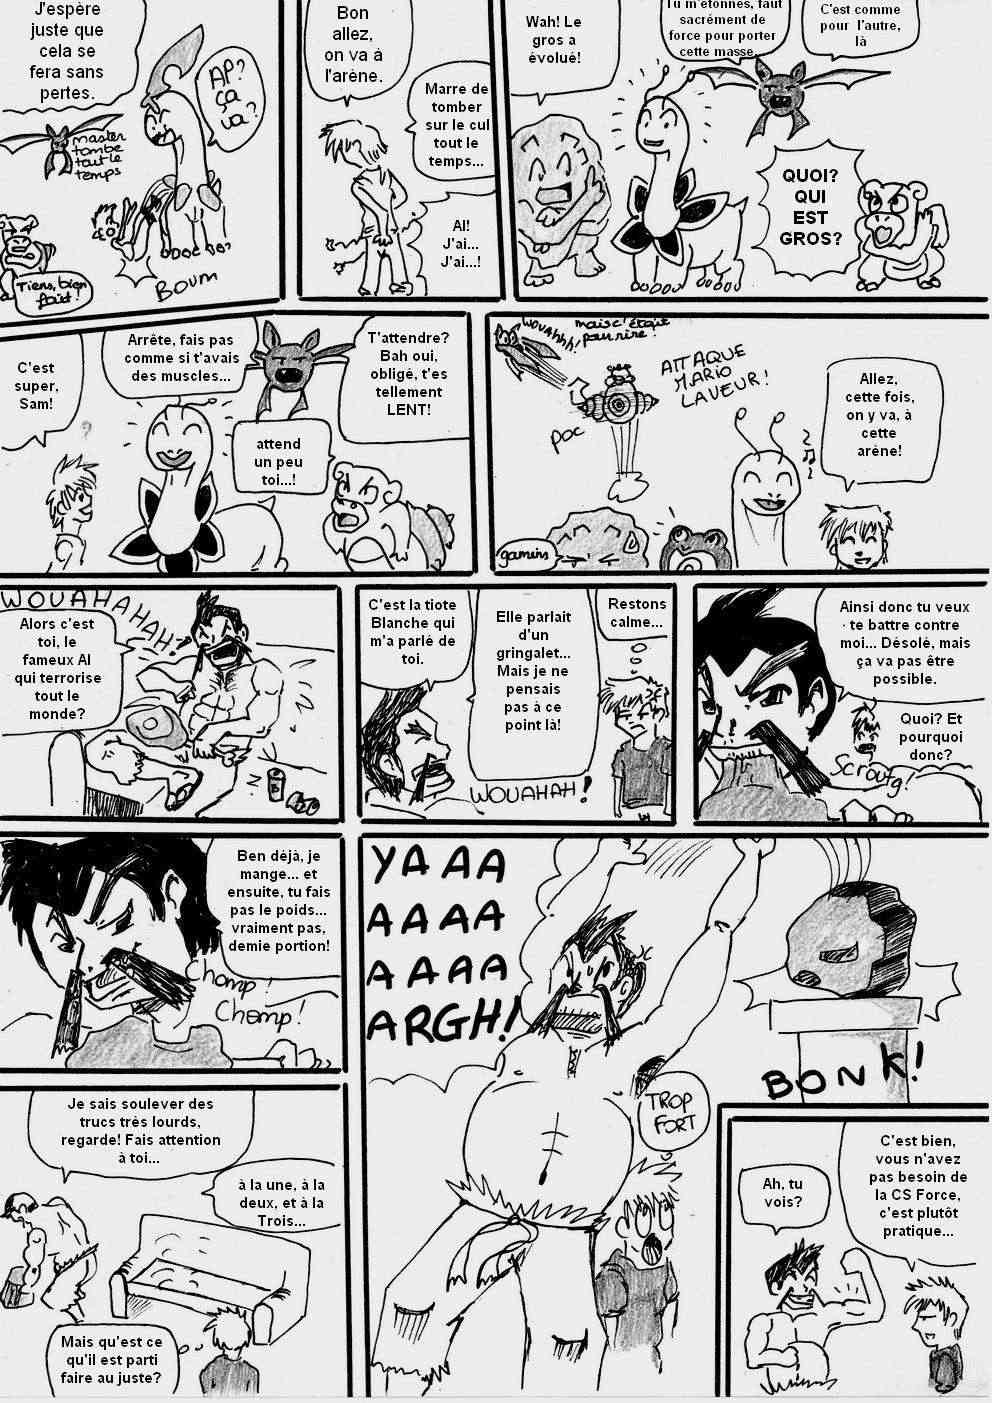 [Argent] shewolf's comic nuz - Page 3 Planch16